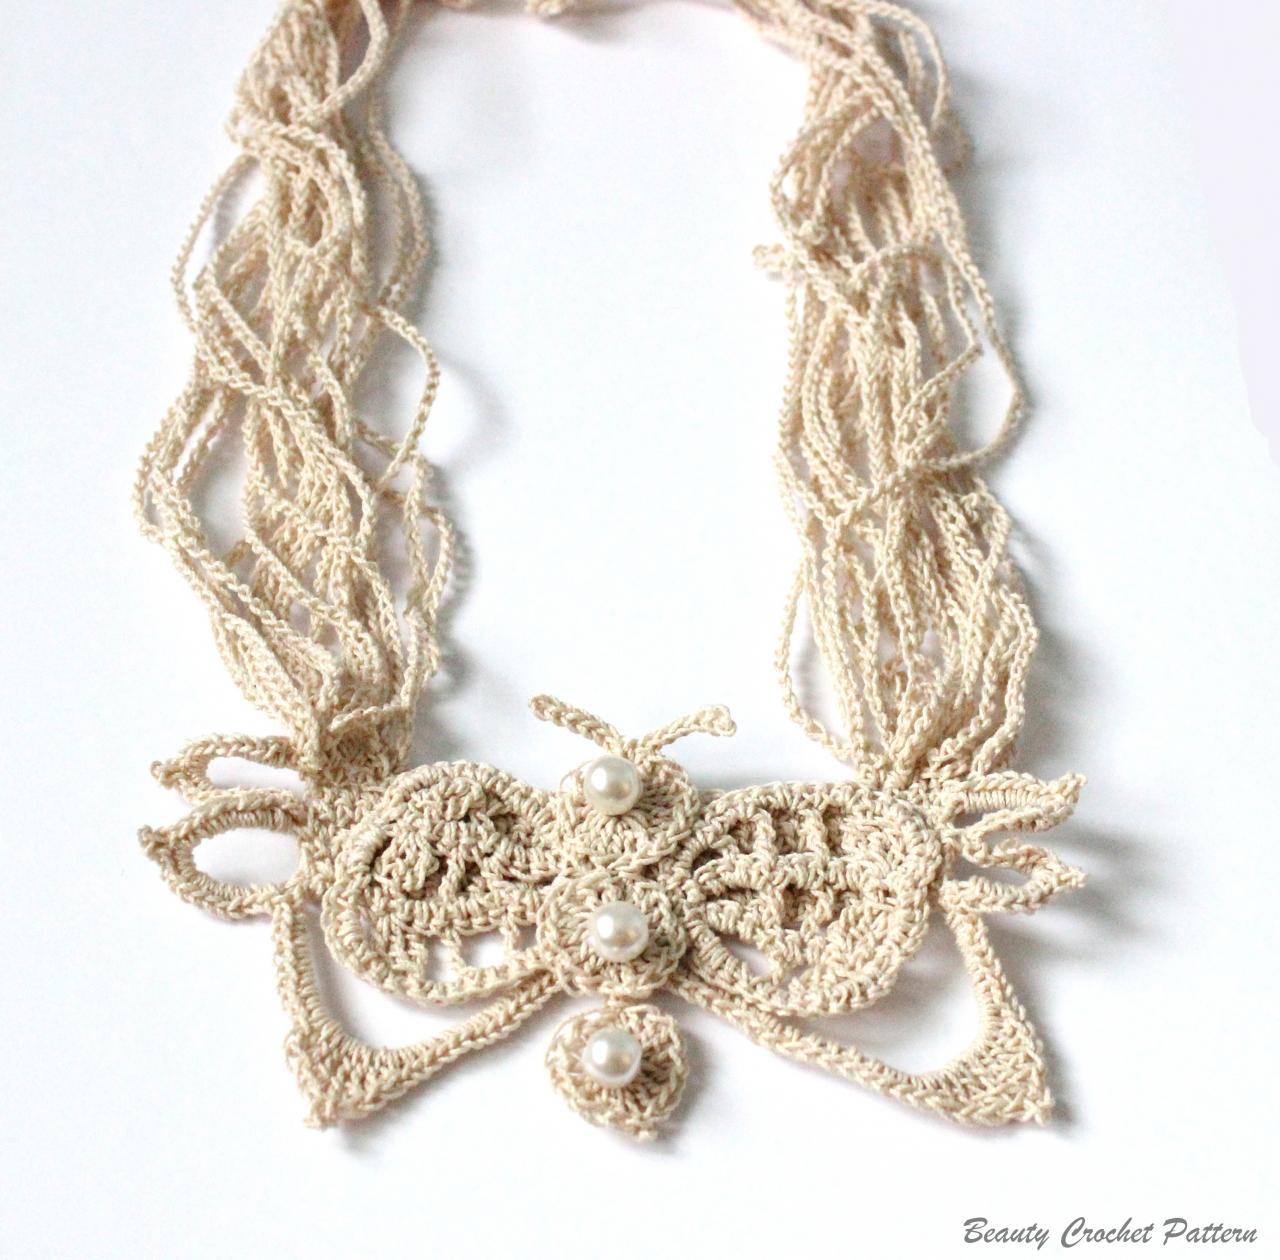 Crochet Pattern Butterfly Necklace Crochet Stand Necklace Pattern, Crochet Jewelry Pattern Bib Necklace Pattern